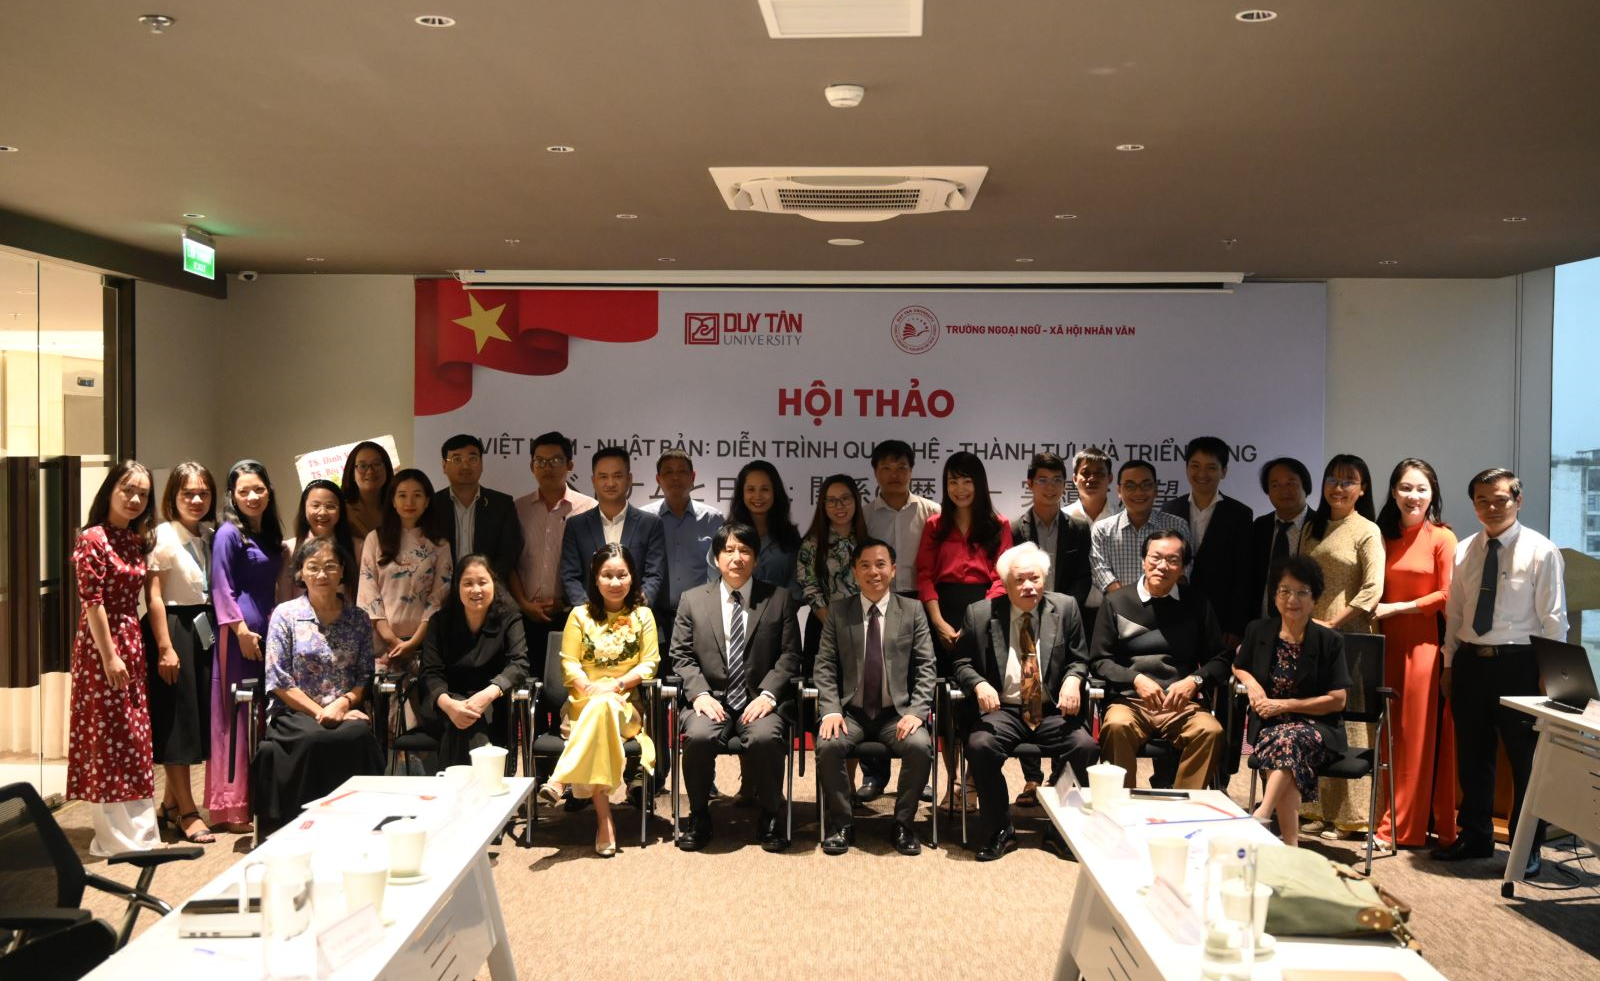 Hội thảo Việt Nam - Nhật Bản: Diễn trình quan hệ - Thành tựu và triển vọng